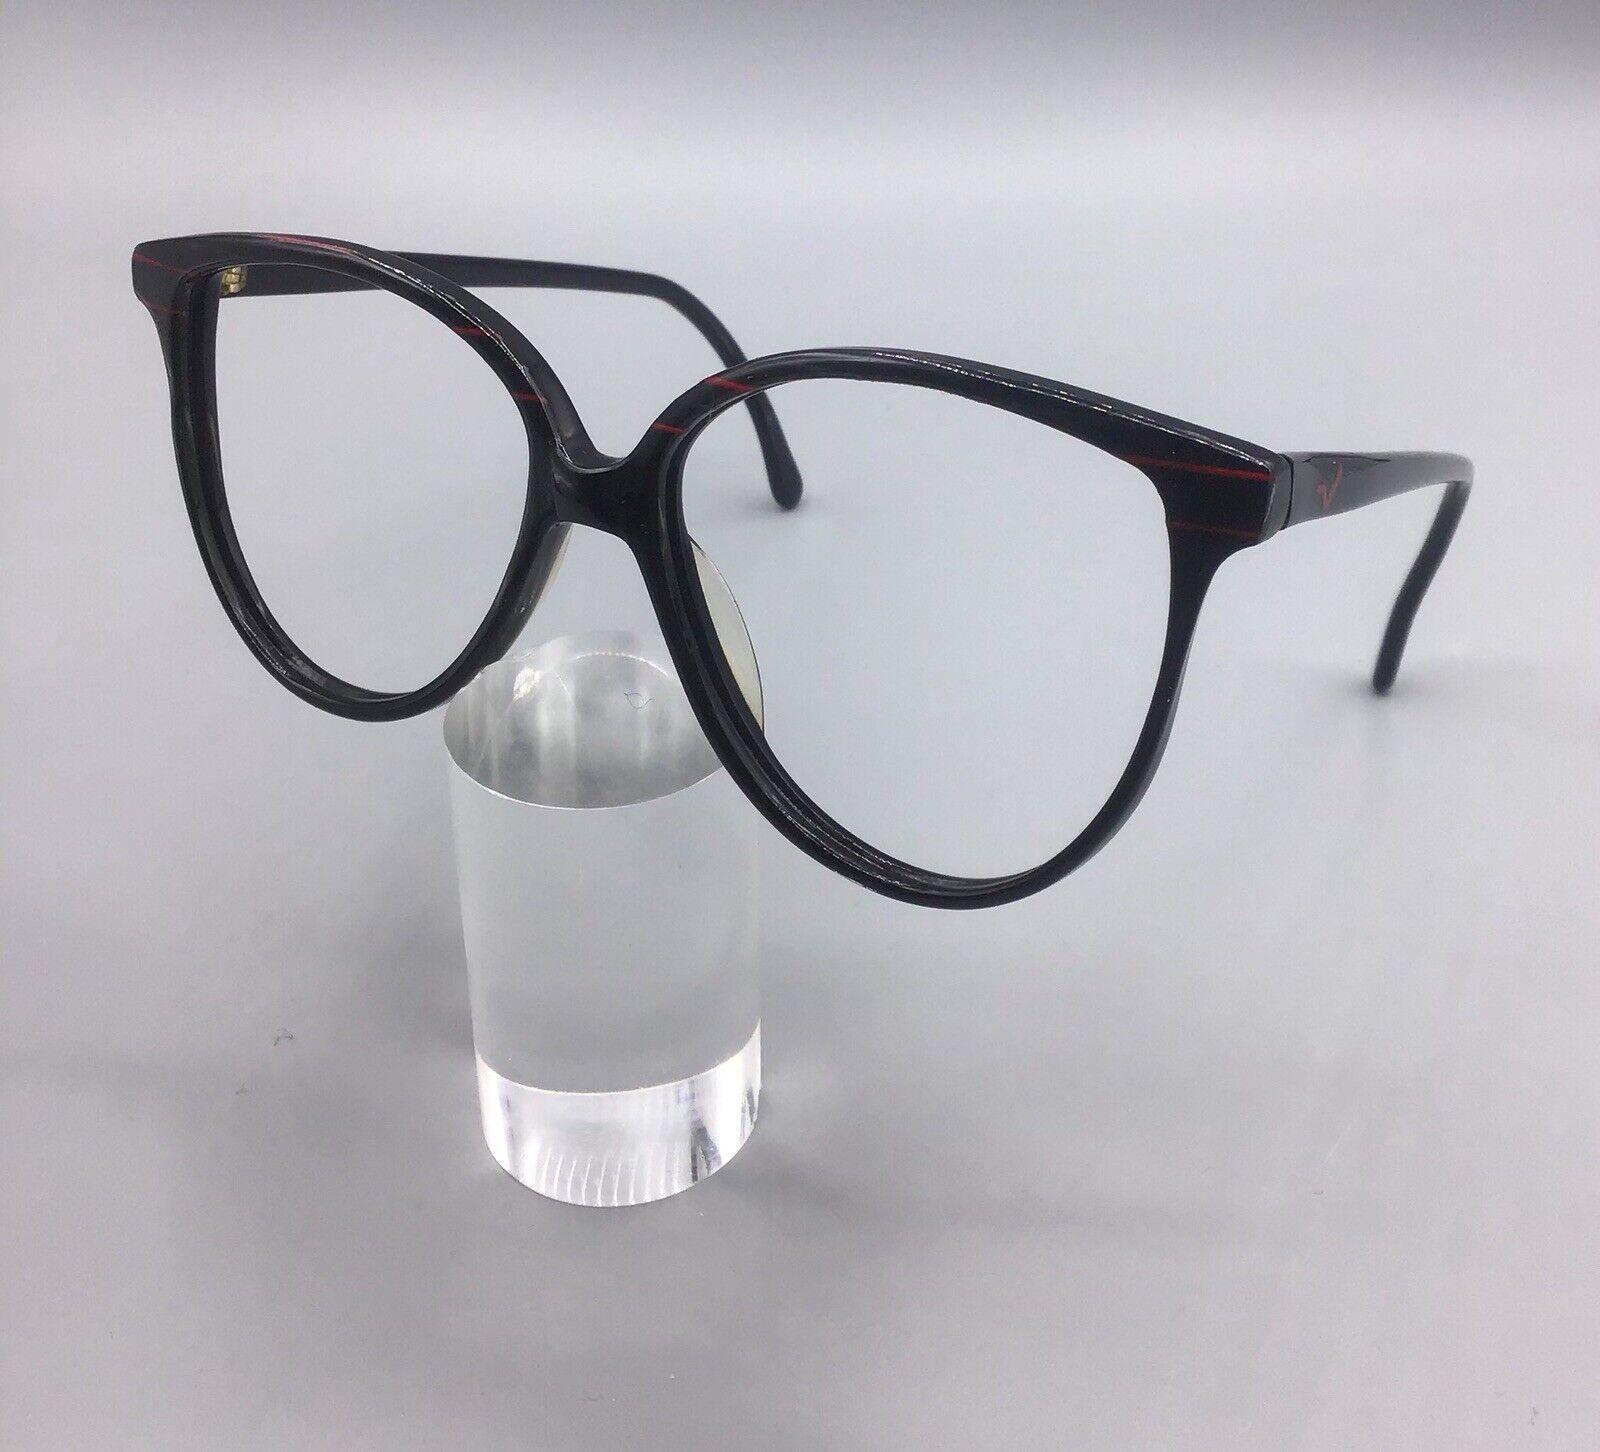 Vogart occhiale vintage eyewear p.303 k95 brillen lunettes